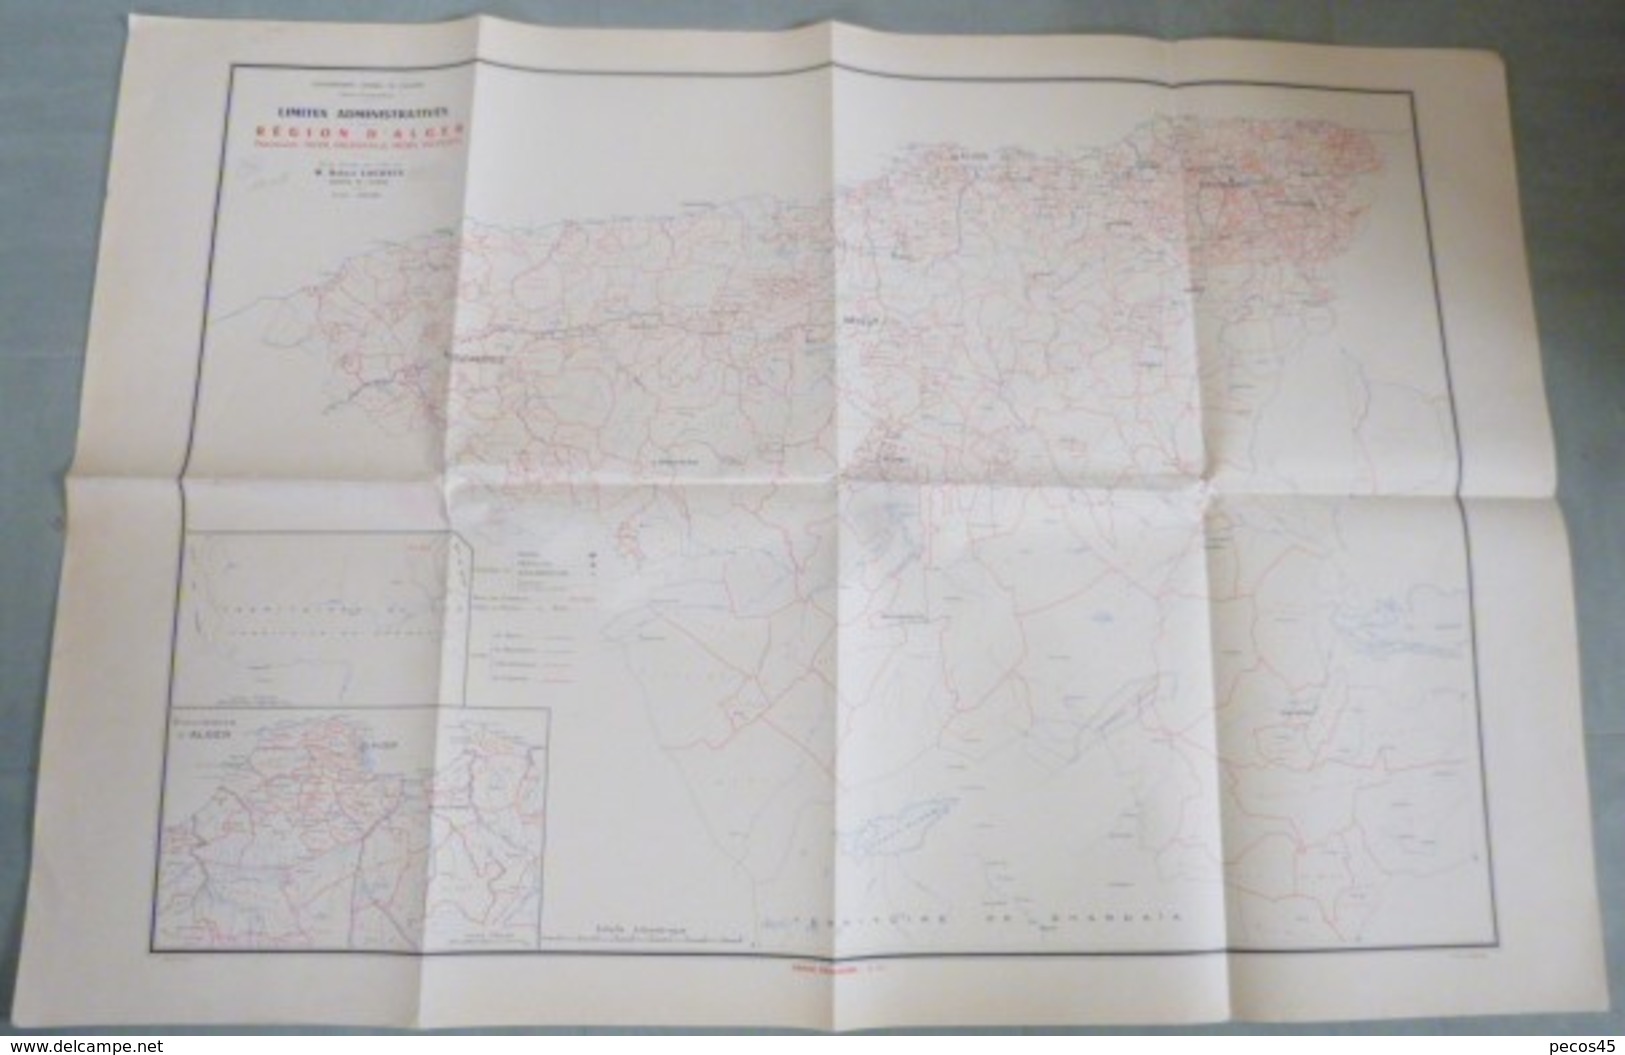 Carte Administrative De La Région D'ALGER - 1/400 000ème - 1957. - Cartes Géographiques